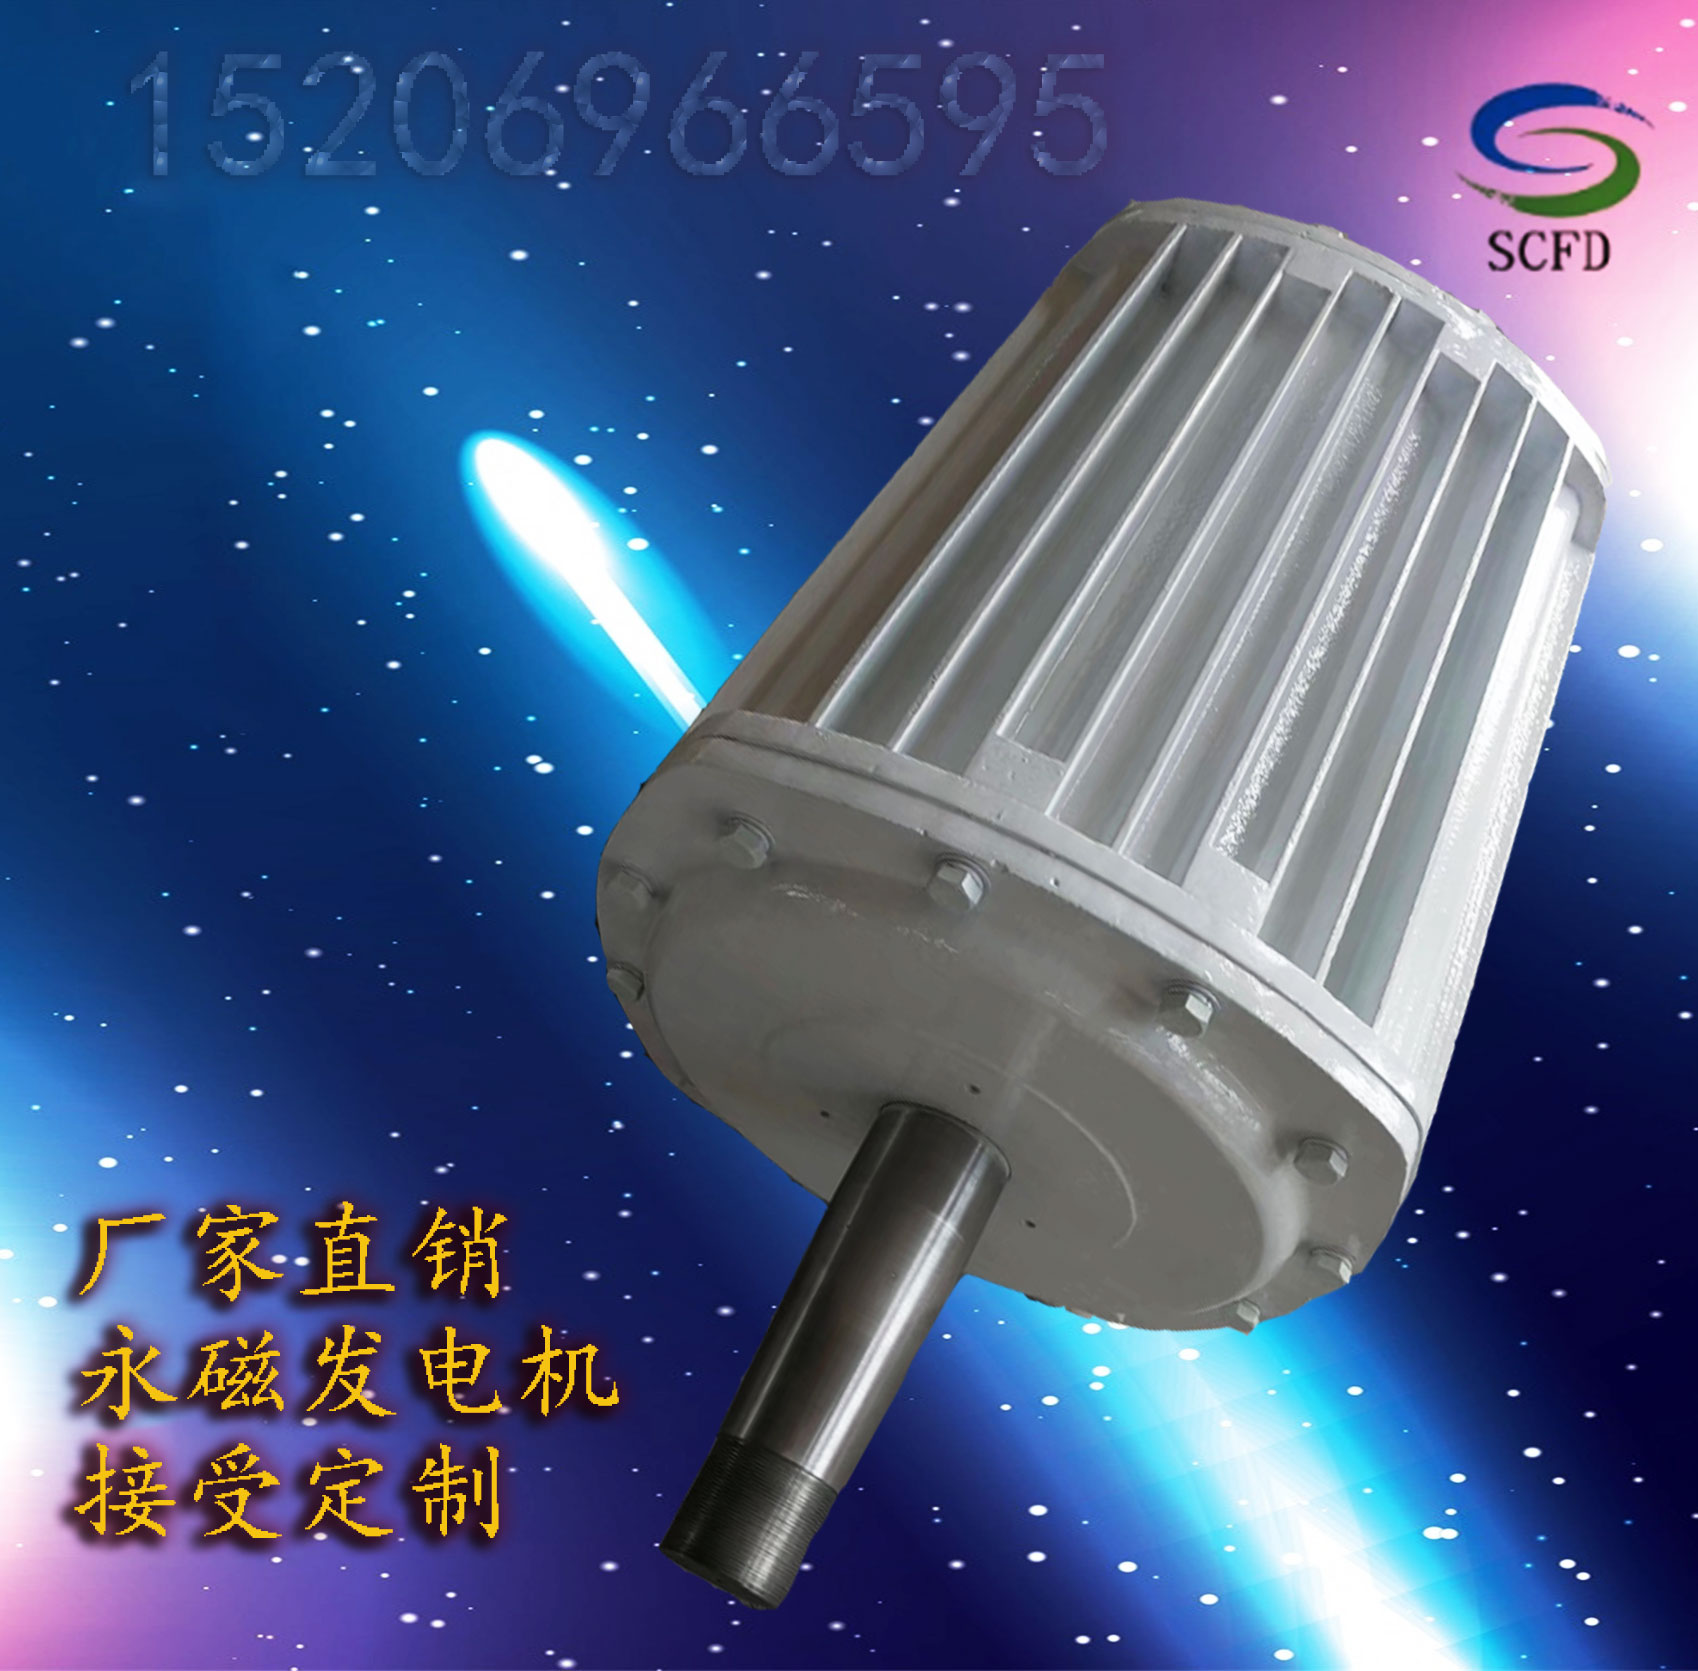 静宁县放心购买发电机家用5000w永磁发电机